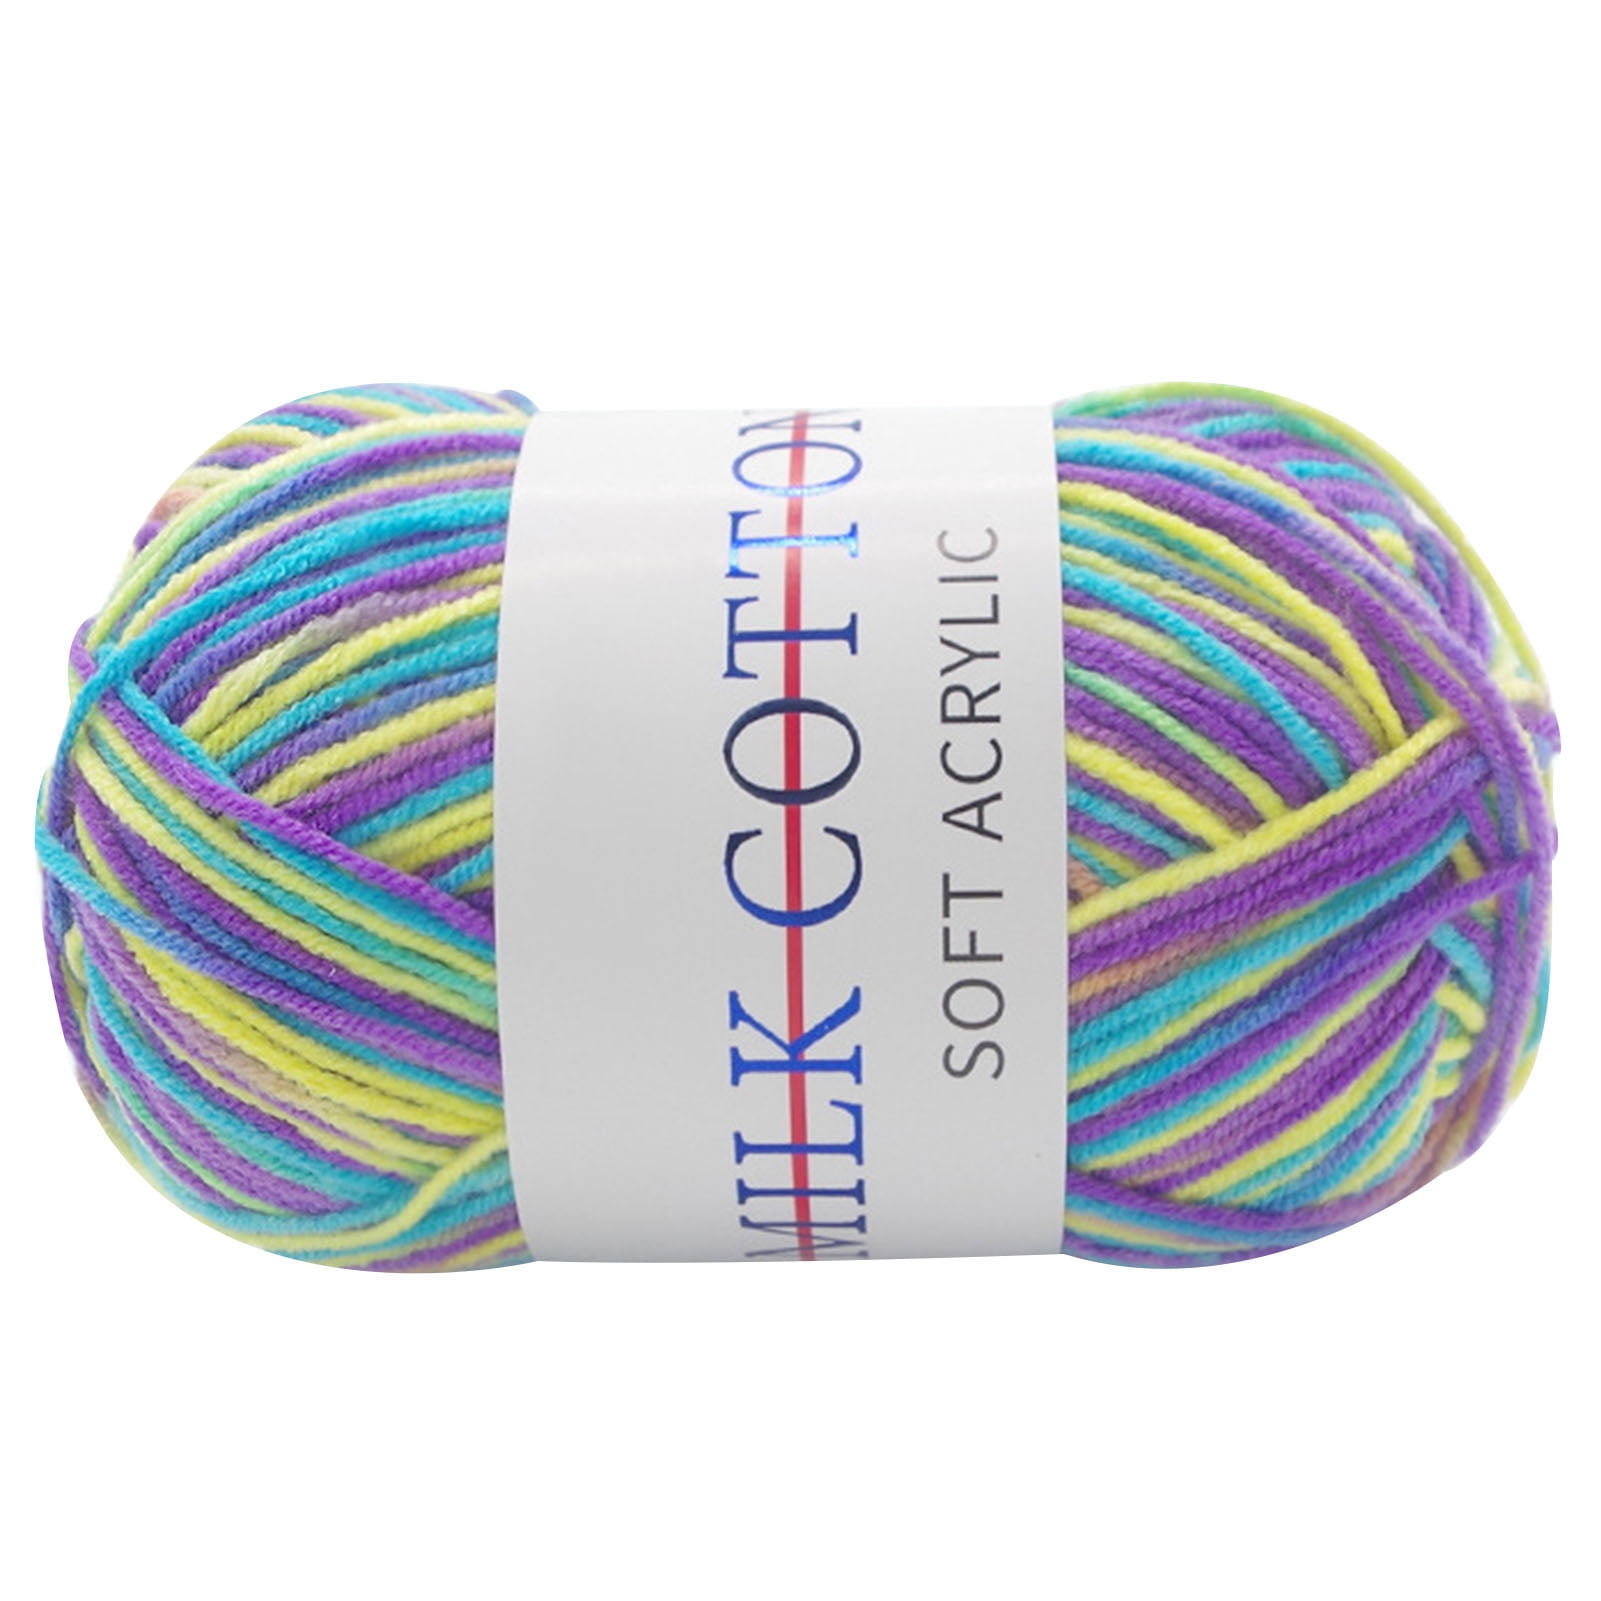 34 Rolls Milk Cotton Yarn for Crocheting Colorful Knitting Yarn Multi  Colored Yarn Soft Rainbow Yarn Crochet Yarn for Crocheting and Knitting  Craft